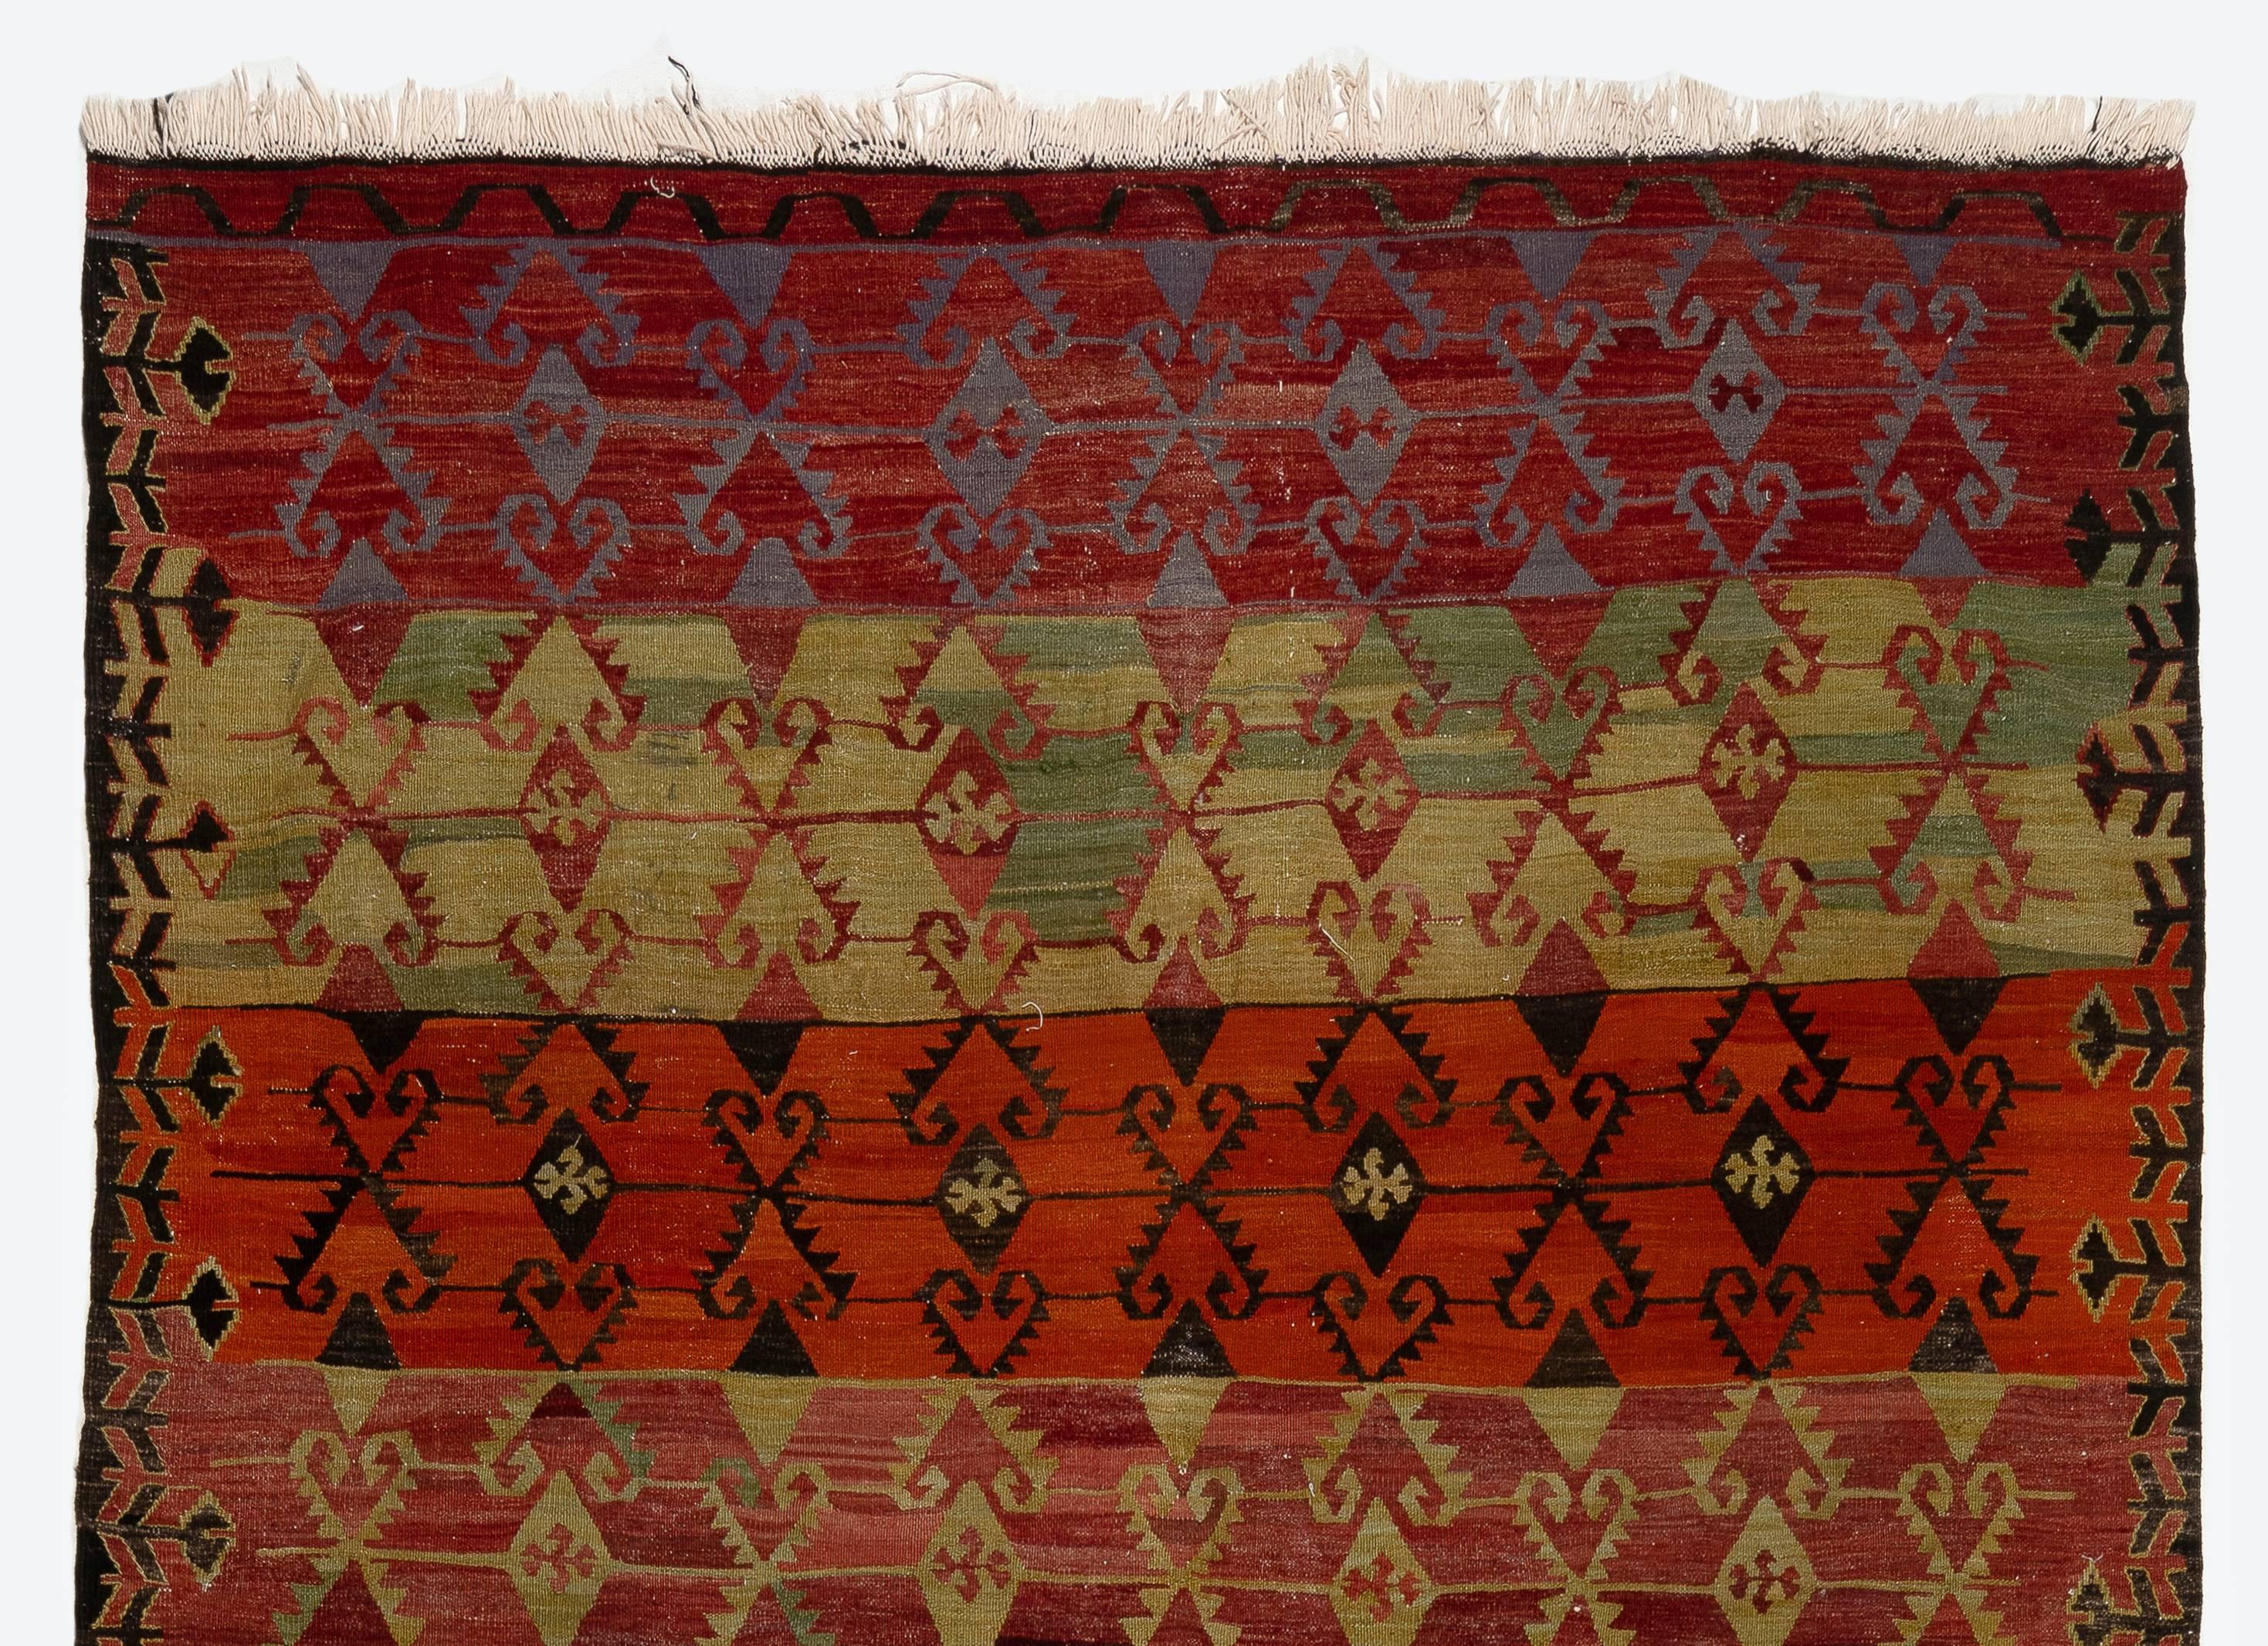 Vintage tissé à plat à la main (Kilim) avec motif géométrique, 100% laine. Mesures : 6 x 13 pieds
Réversible ; les deux côtés peuvent être utilisés.
Idéal pour les intérieurs résidentiels et commerciaux.
Nous pouvons fournir un tapis de sol